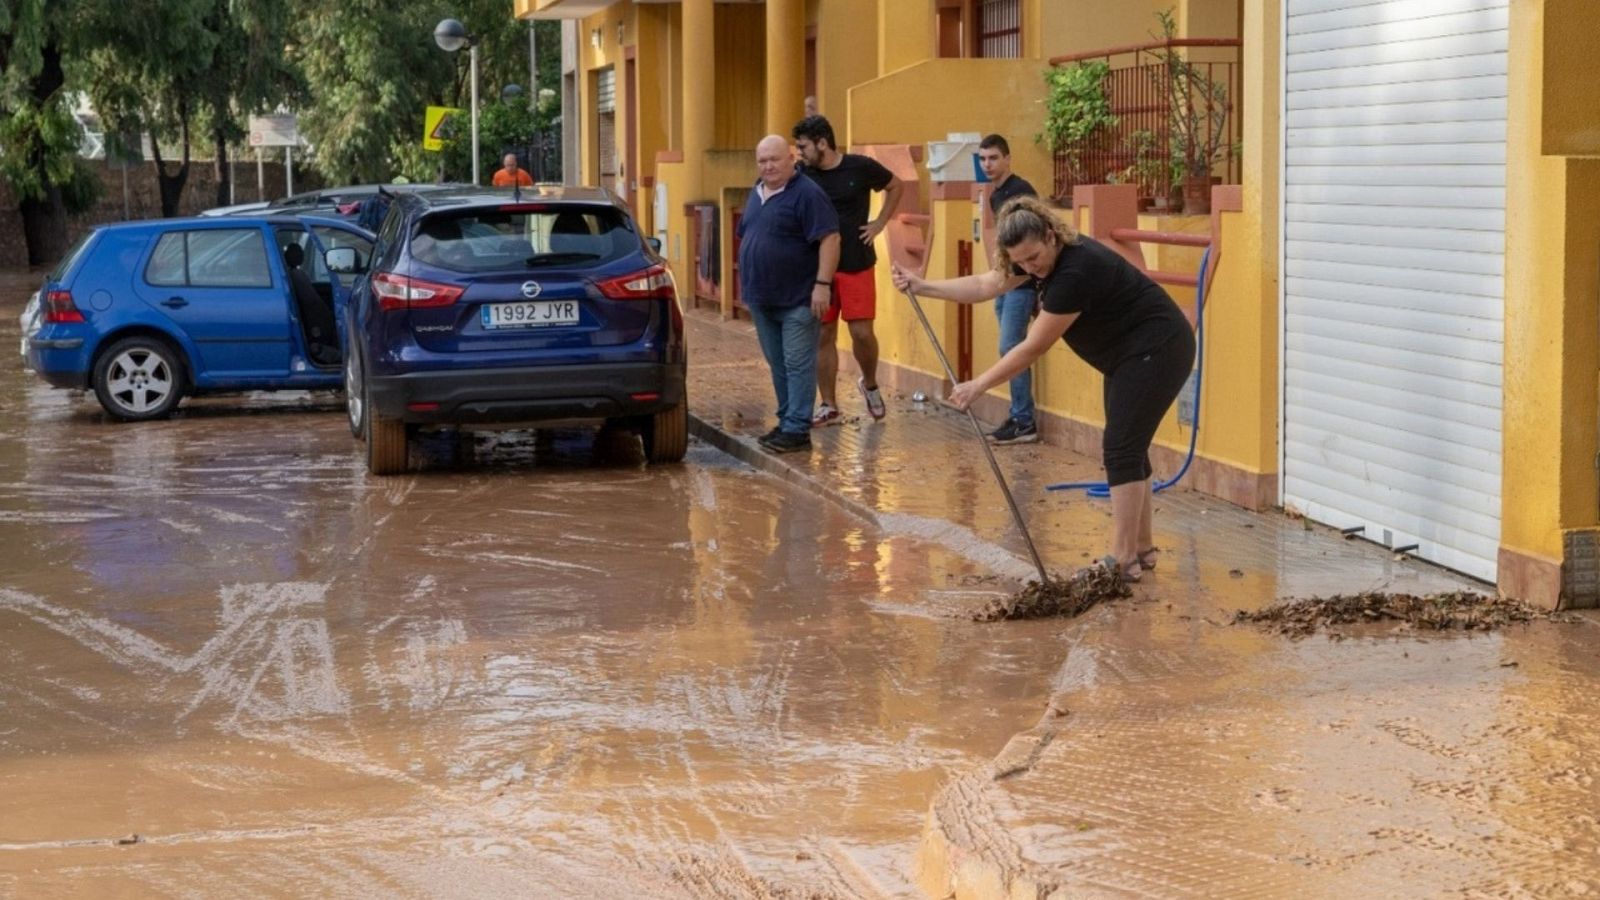 Alcaldesa de Cartagena, Murcia: "Las lluvias han dejado una acumulación por encima de los 100 litros" - Ver ahora